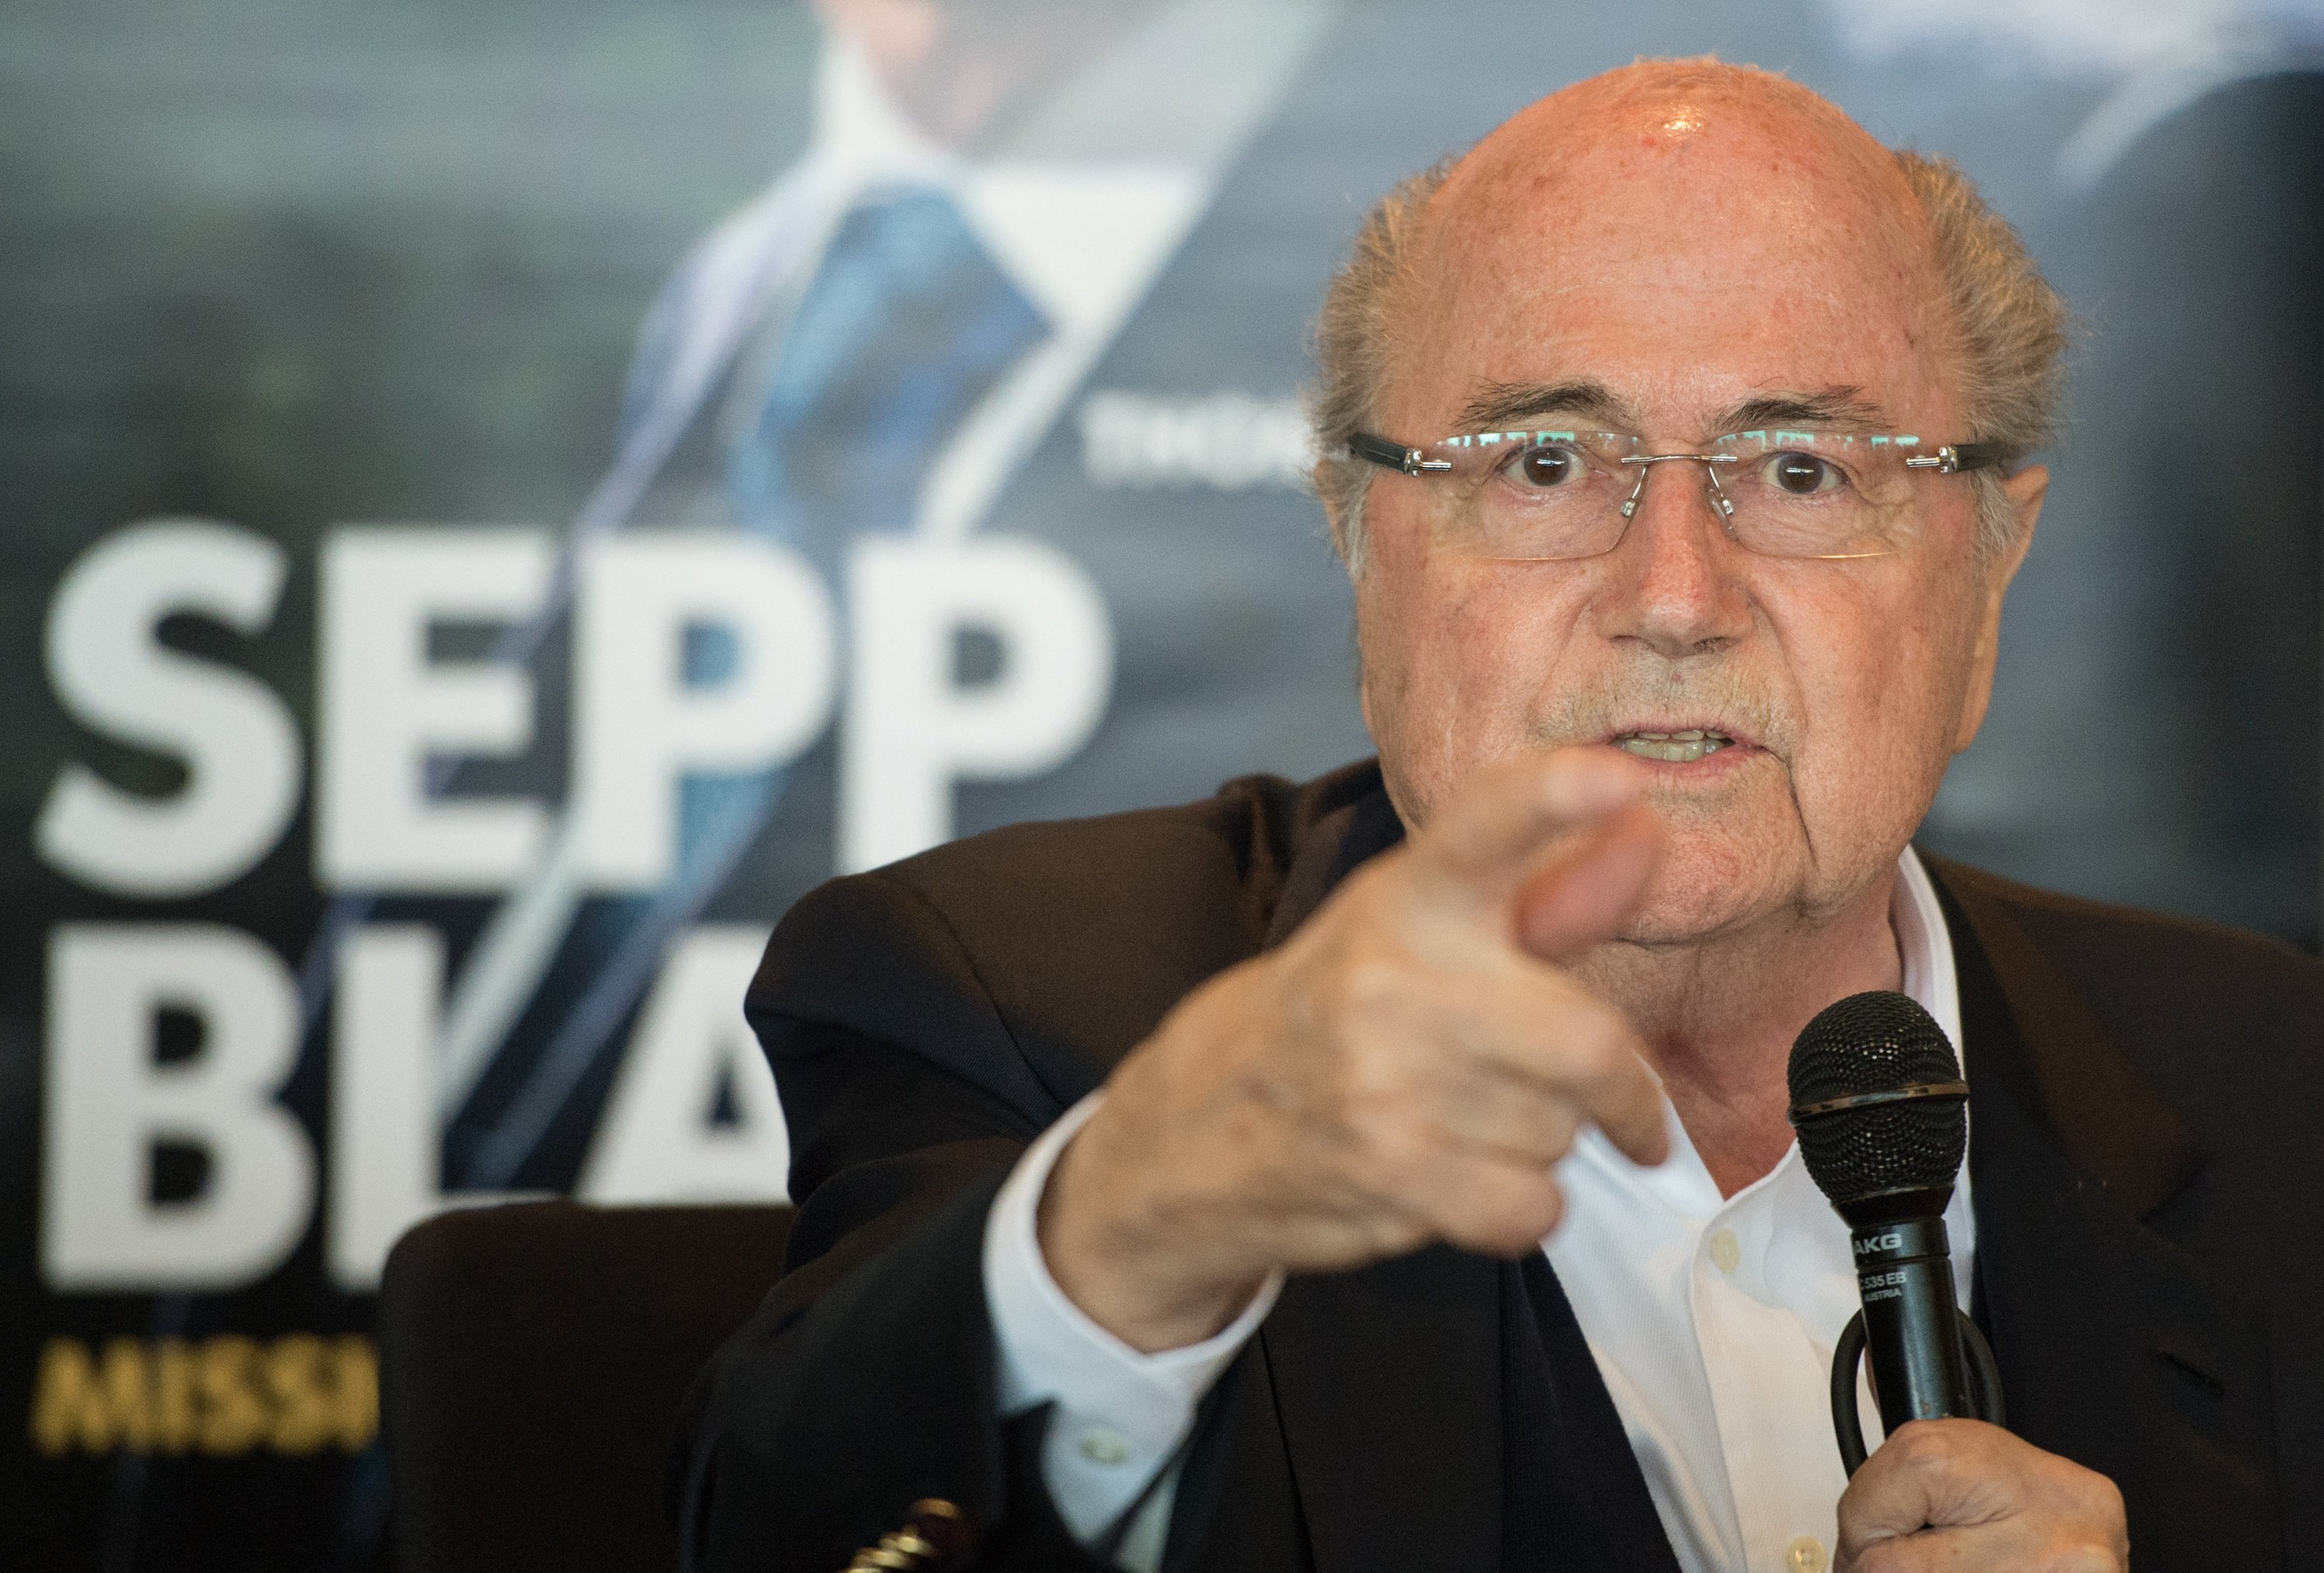 Macht wieder neue Schlagzeilen: der frühere Fifa-Präsident Sepp Blatter. Plötzlich ist ihm eingefallen, wie die Kugeln bei Auslosung großer Turniere technisch manipuliert werden.